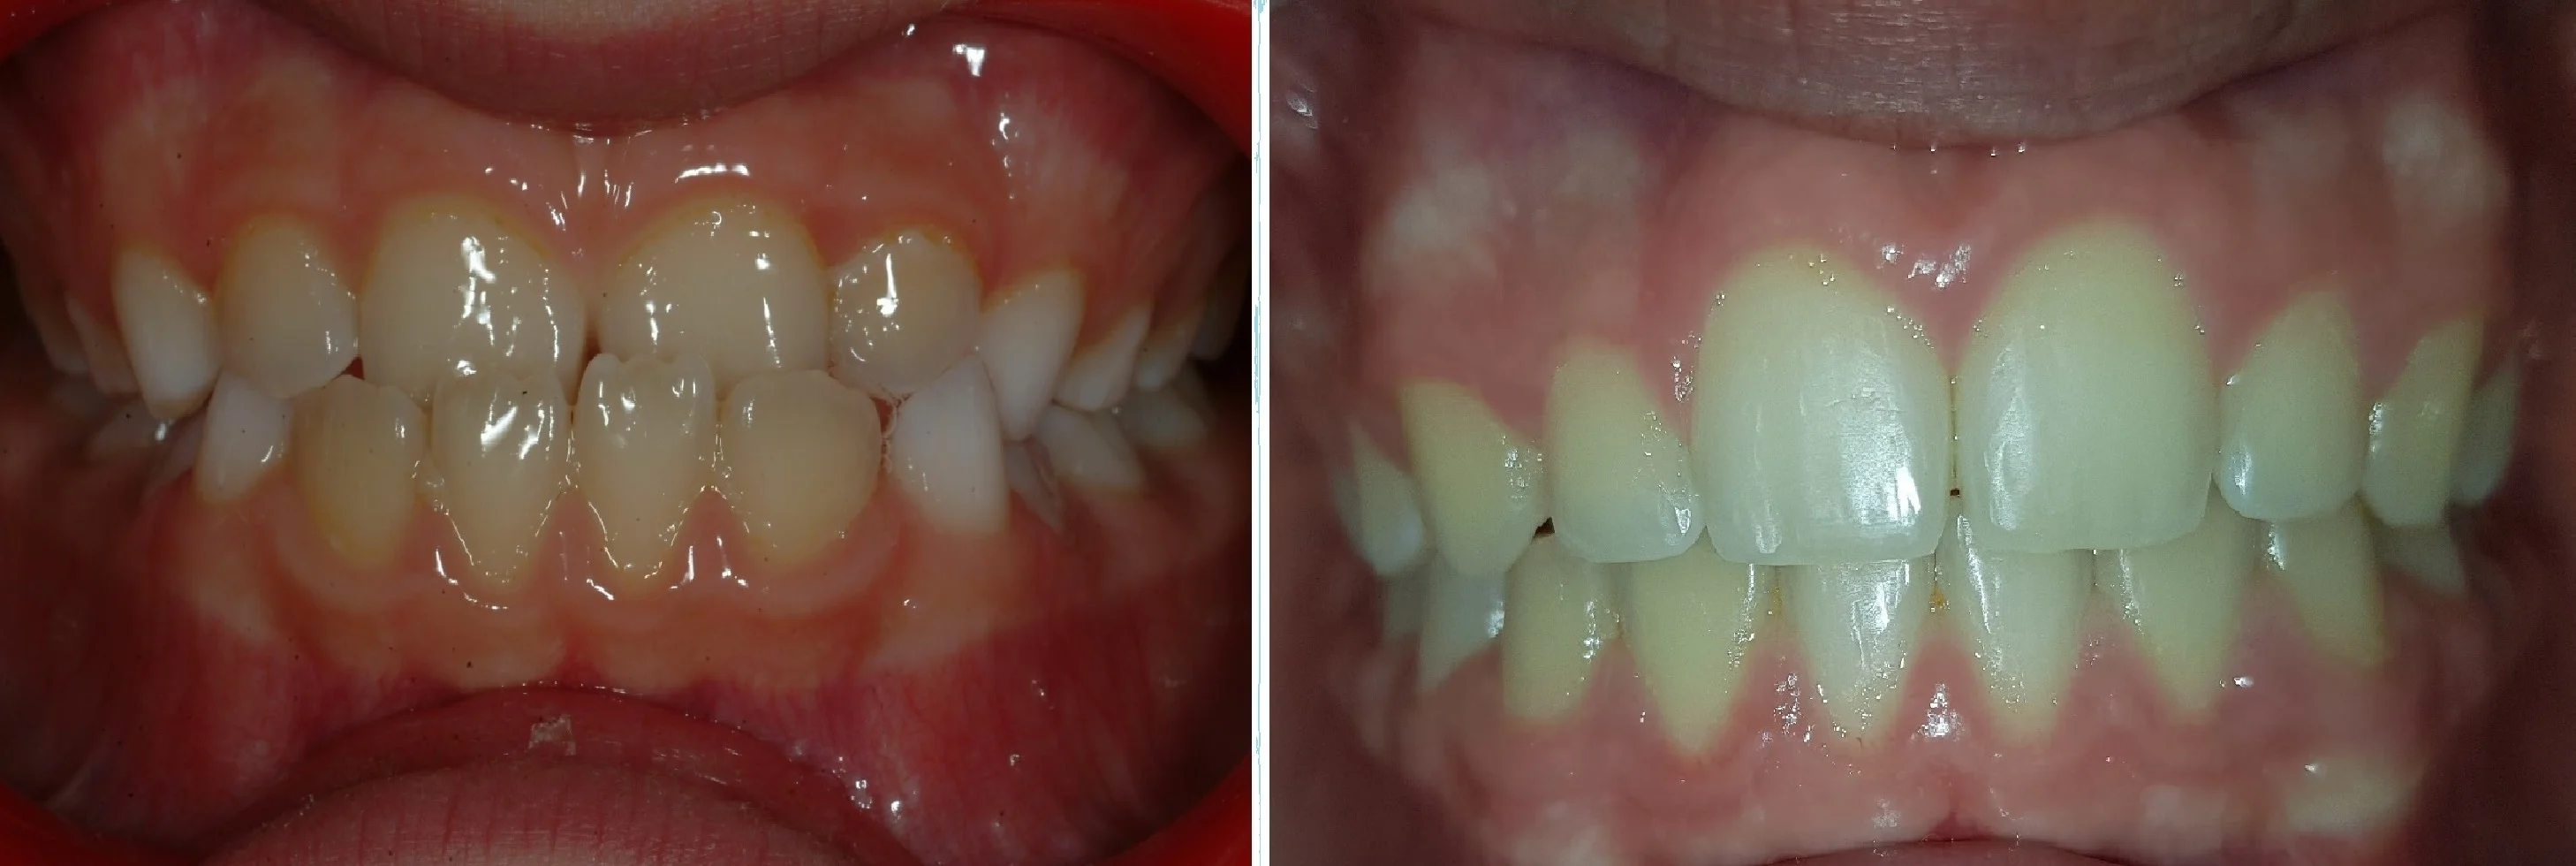 La contention. Après le traitement orthodontique actif - SFODF